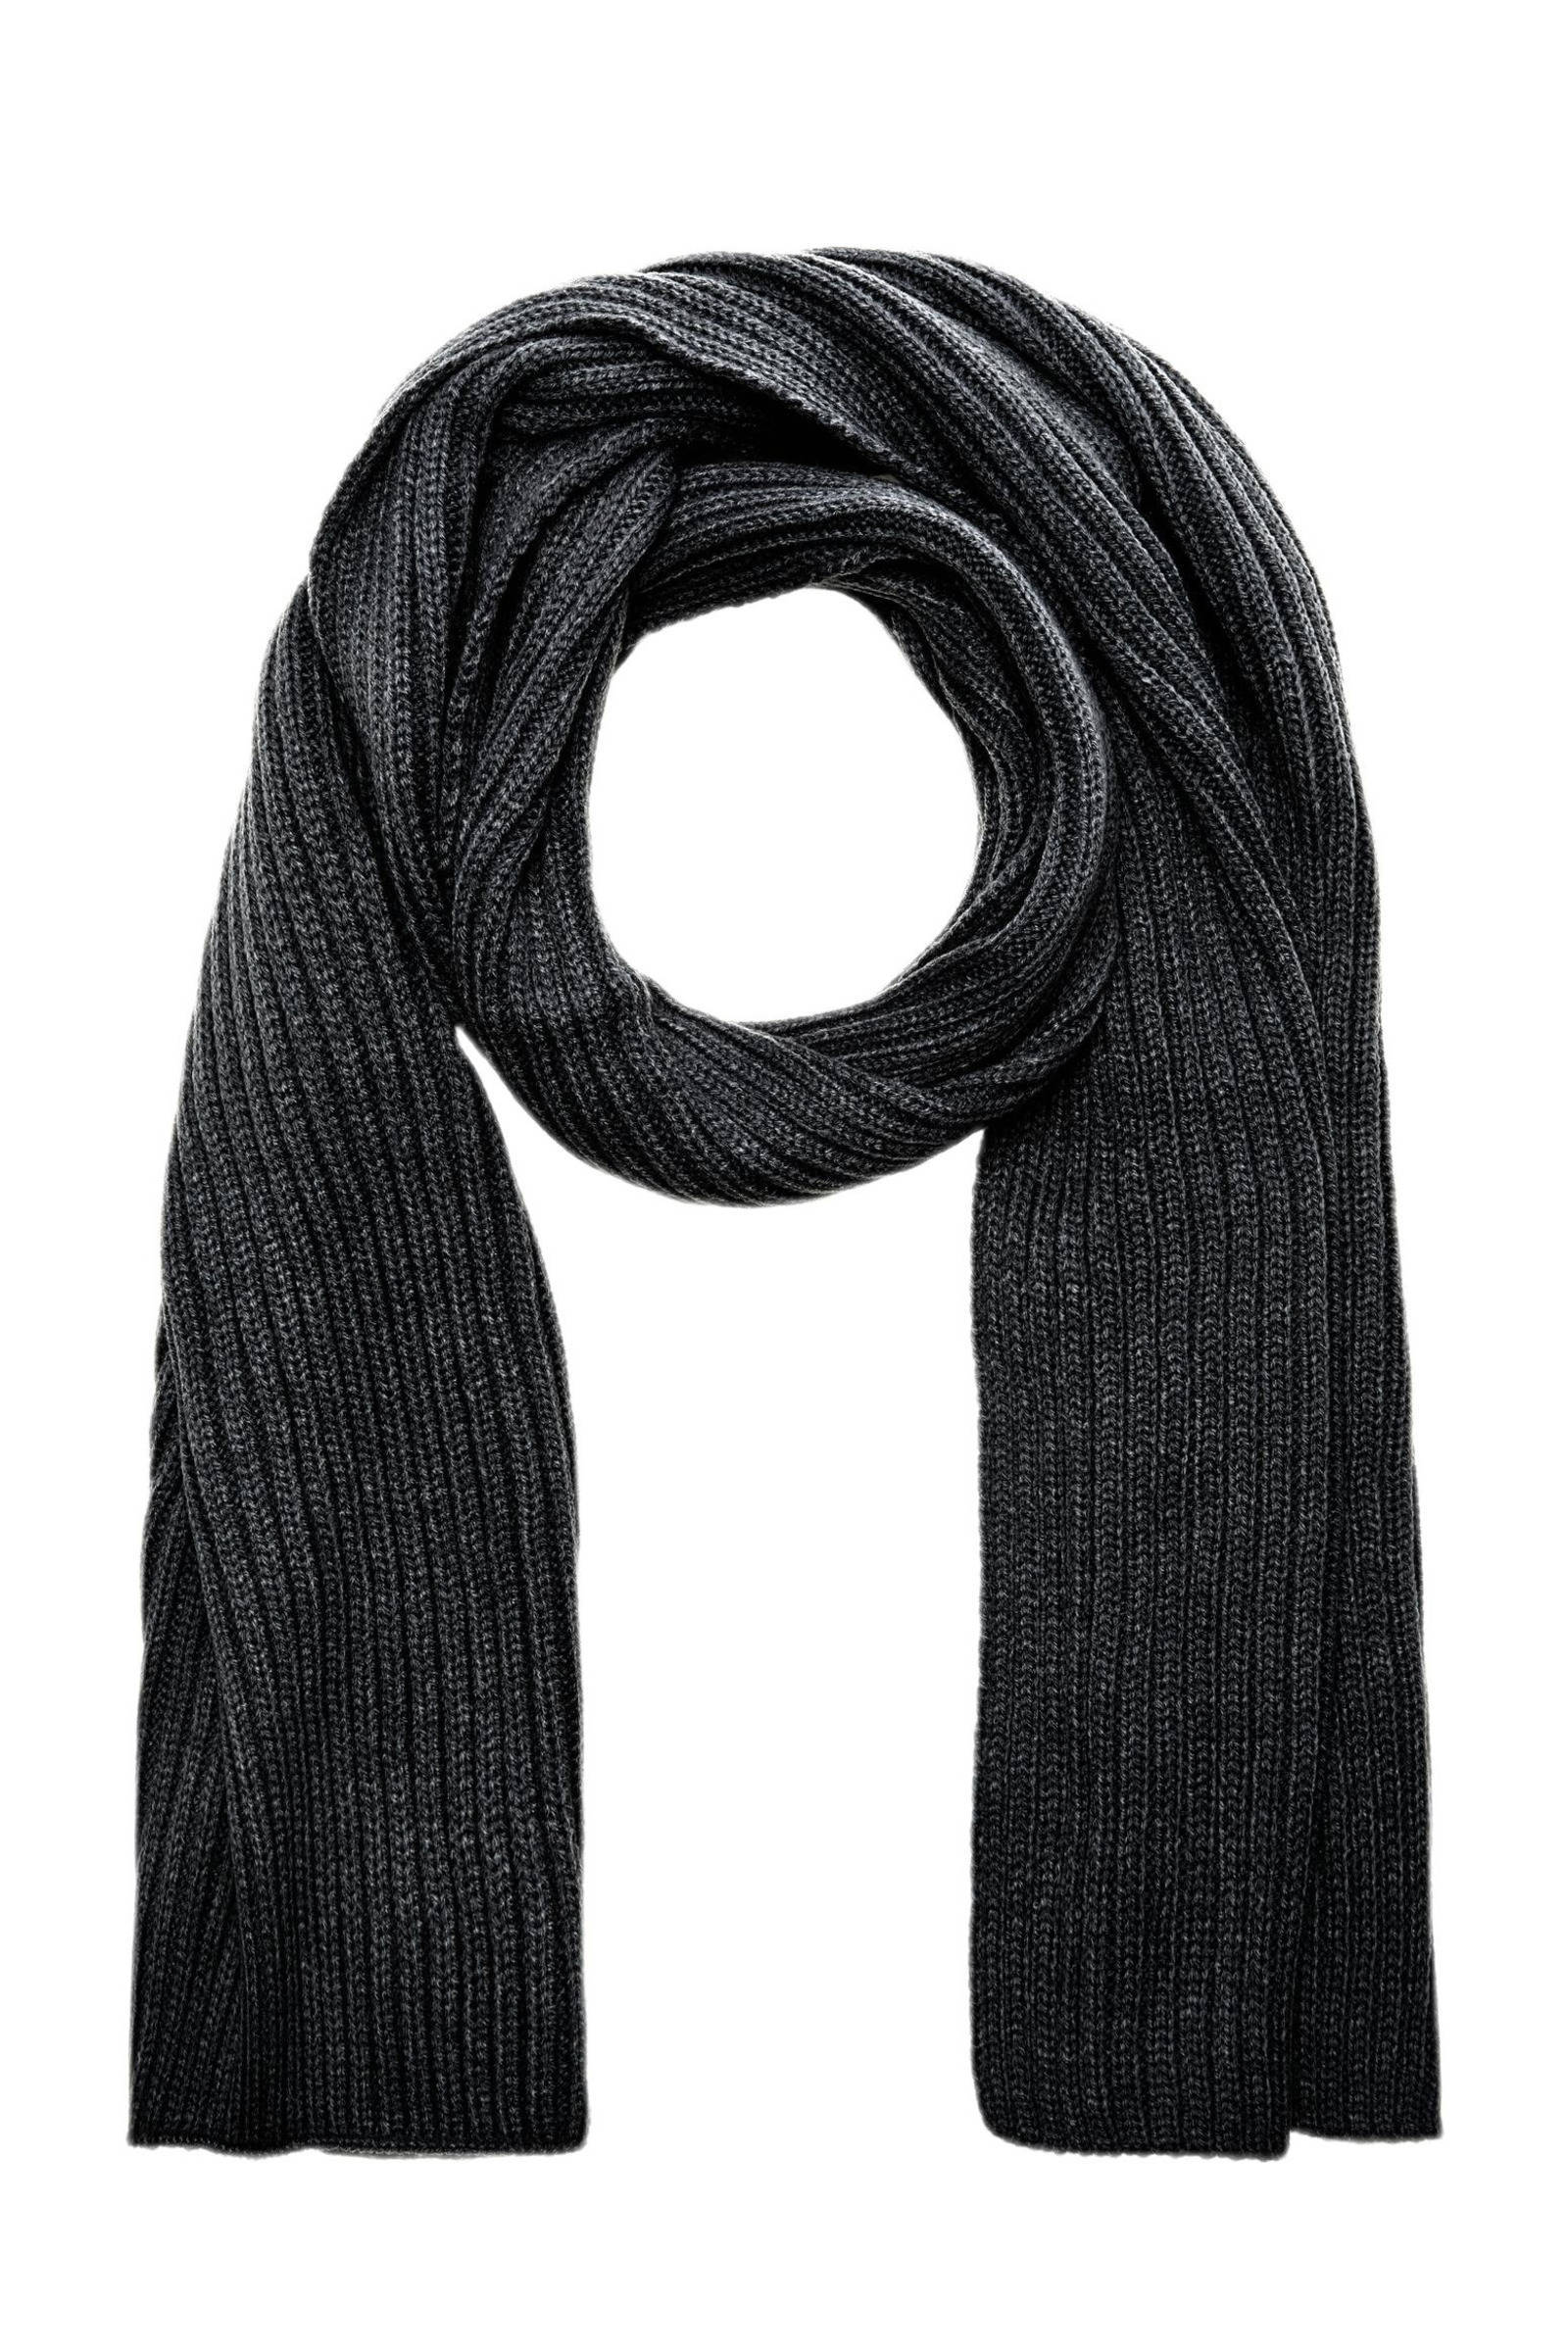 Hallhuber Gebreide sjaal zwart-wit geruite print zakelijke stijl Accessoires Sjaals Gebreide Sjaals 